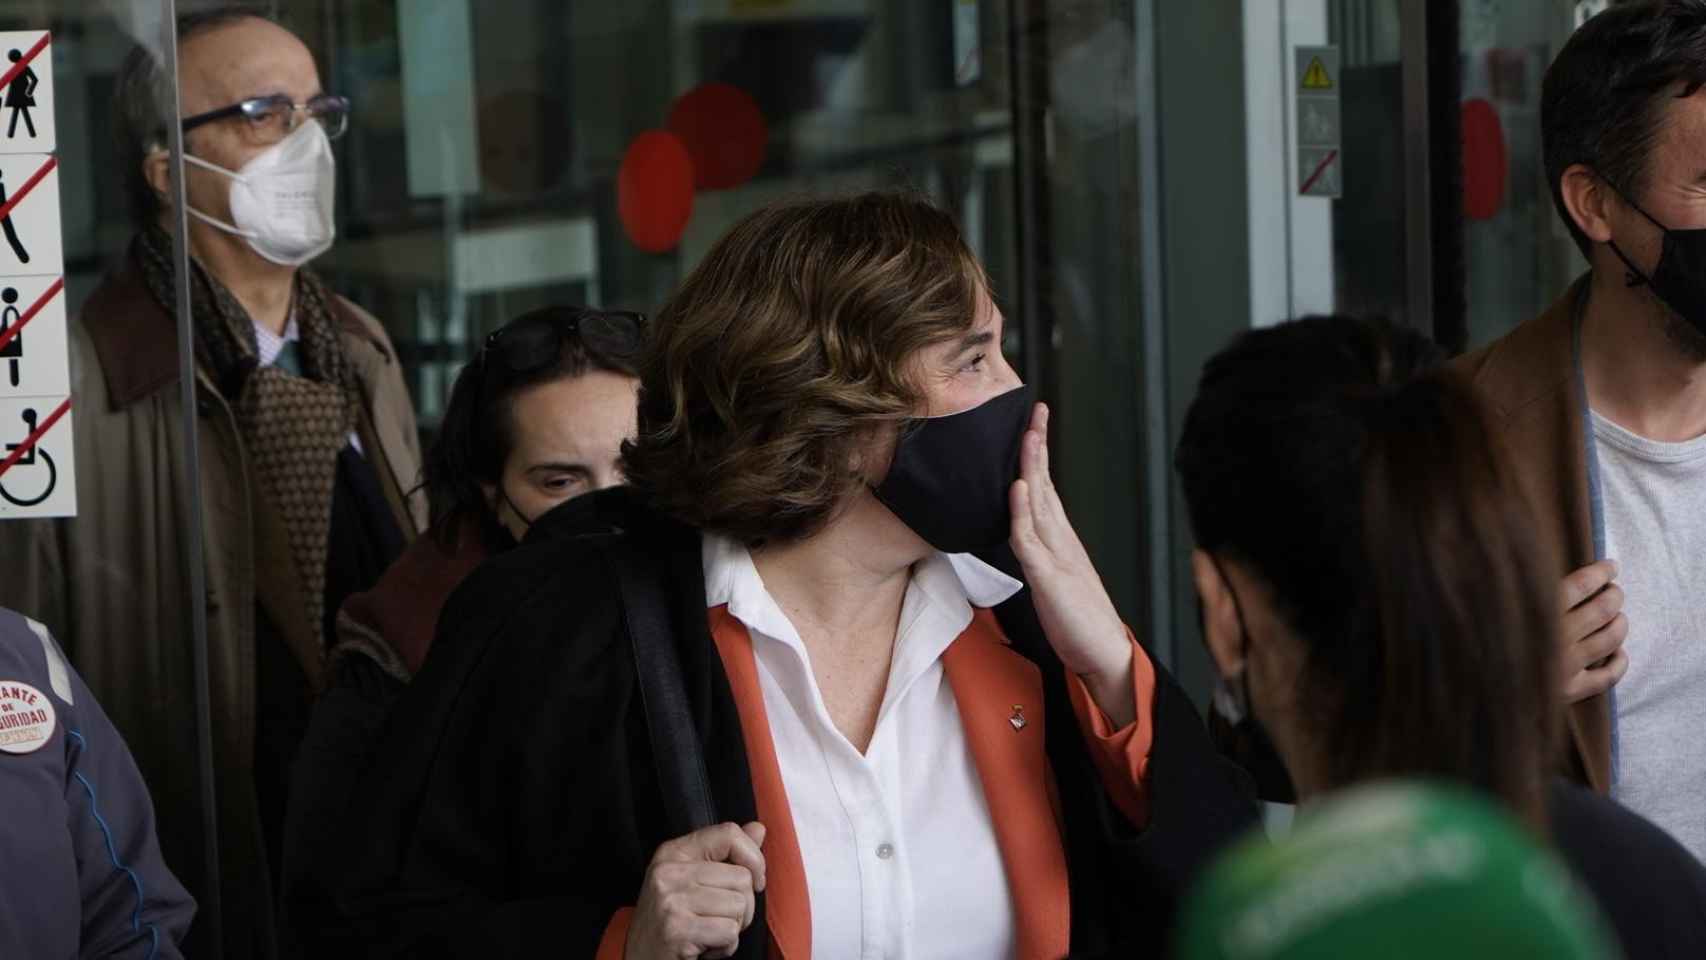 Ada Colau, alcaldesa de Barcelona, sale de declarar en la Ciutat de la Justicia / LUIS MIGUEL AÑÓN (CG)